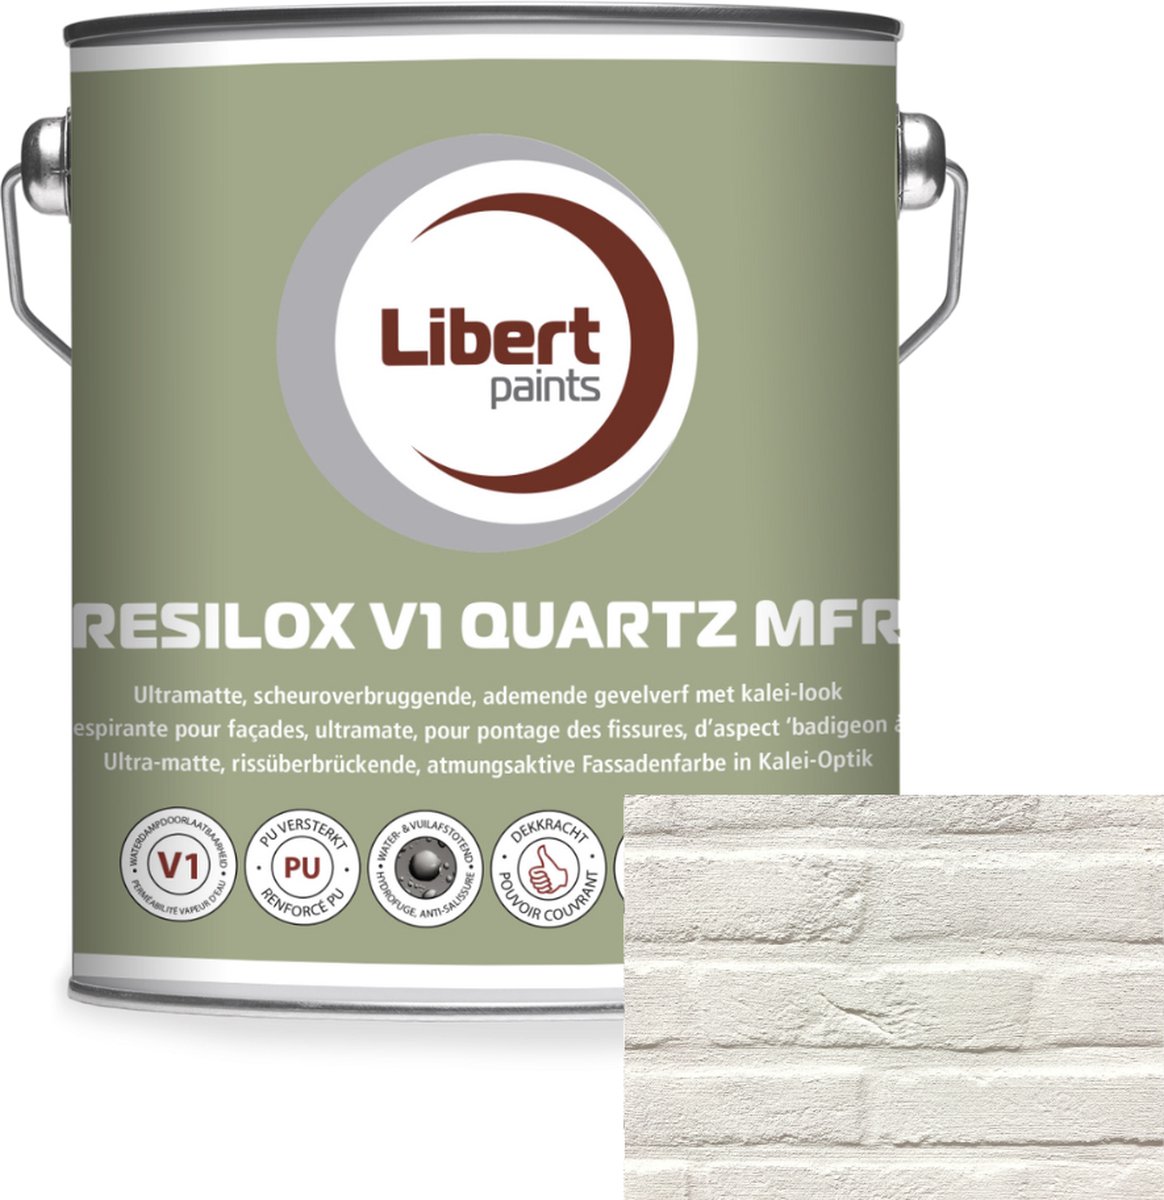 Kalei Verf - Kleur 002 - Libert Resilox V1 Quartz MFR 3,5kg